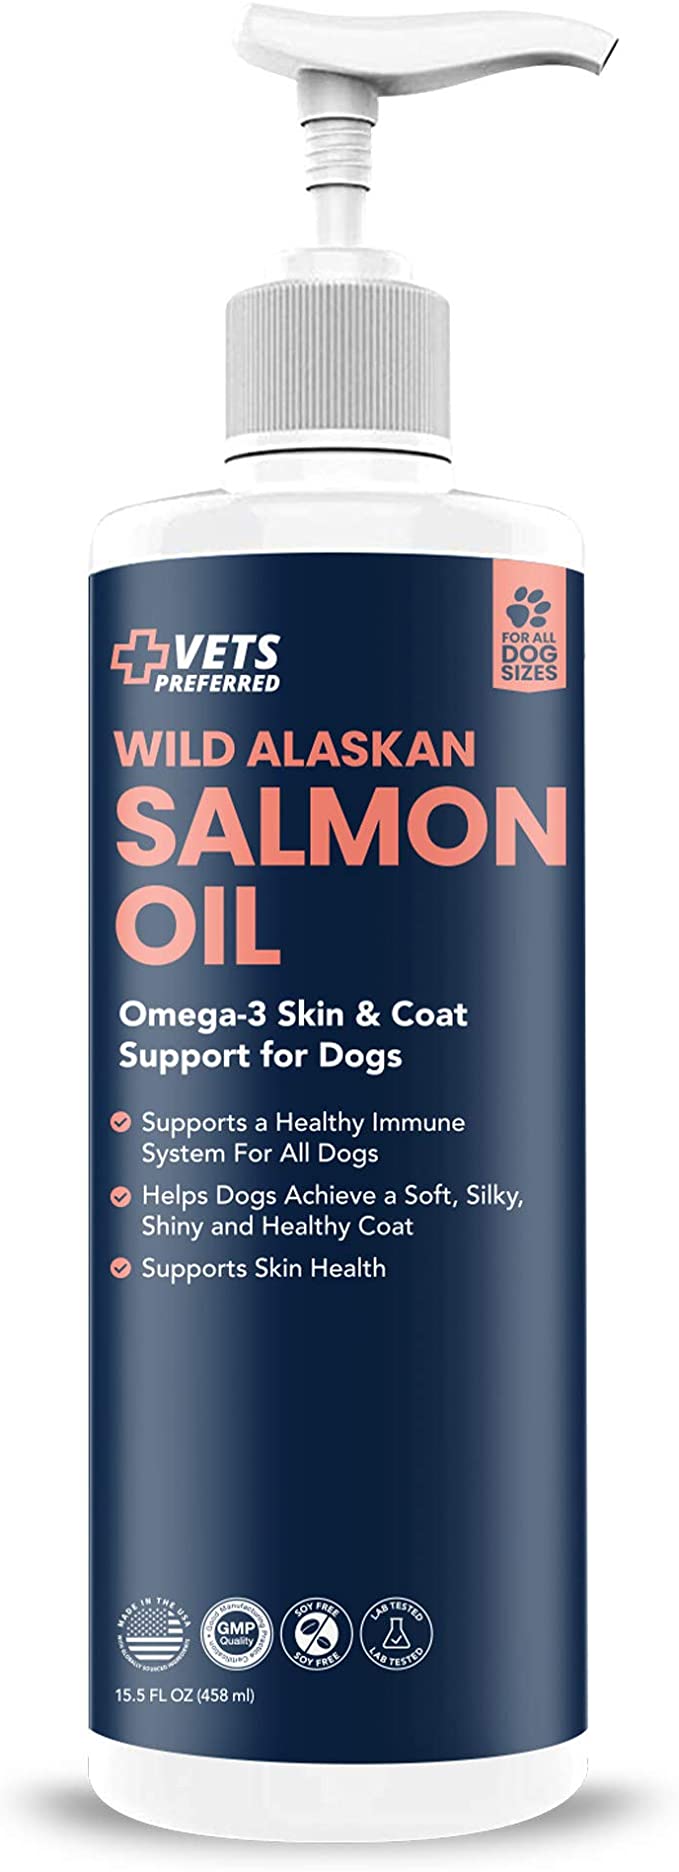 Vets Preferred Wild Alaskan Salmon Oil Dogs